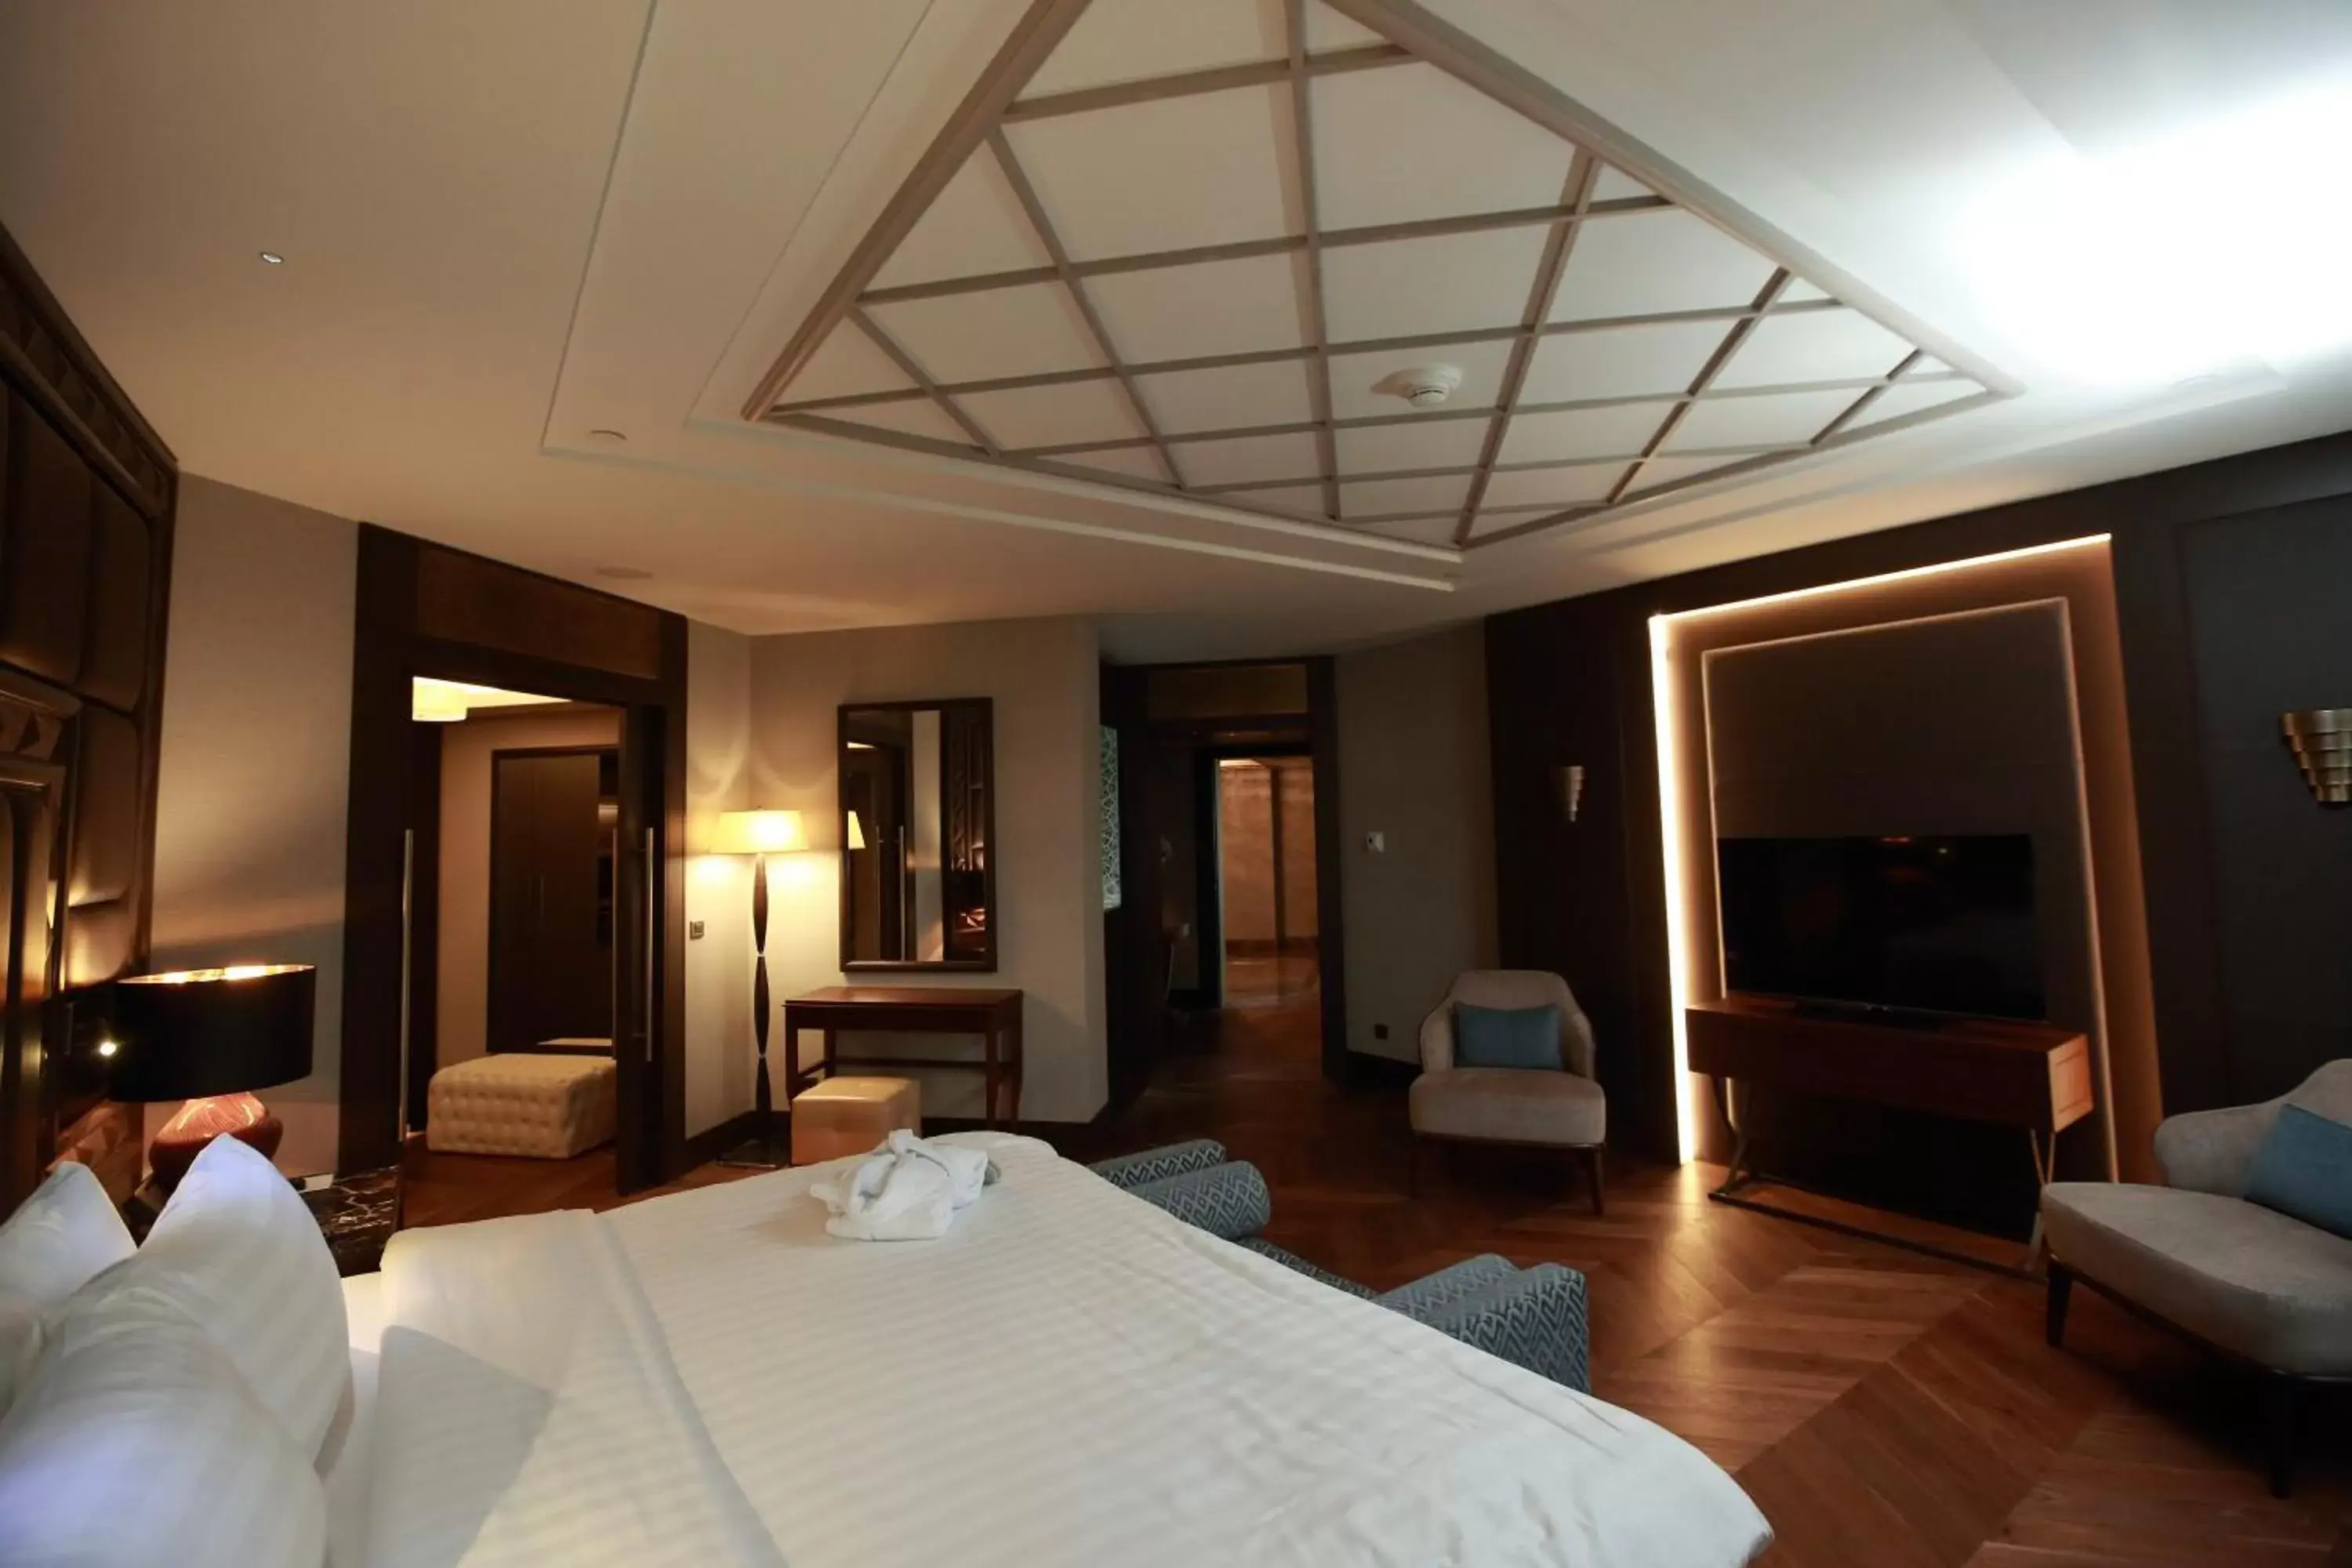 Bedroom, TV/Entertainment Center in International Hotel Tashkent